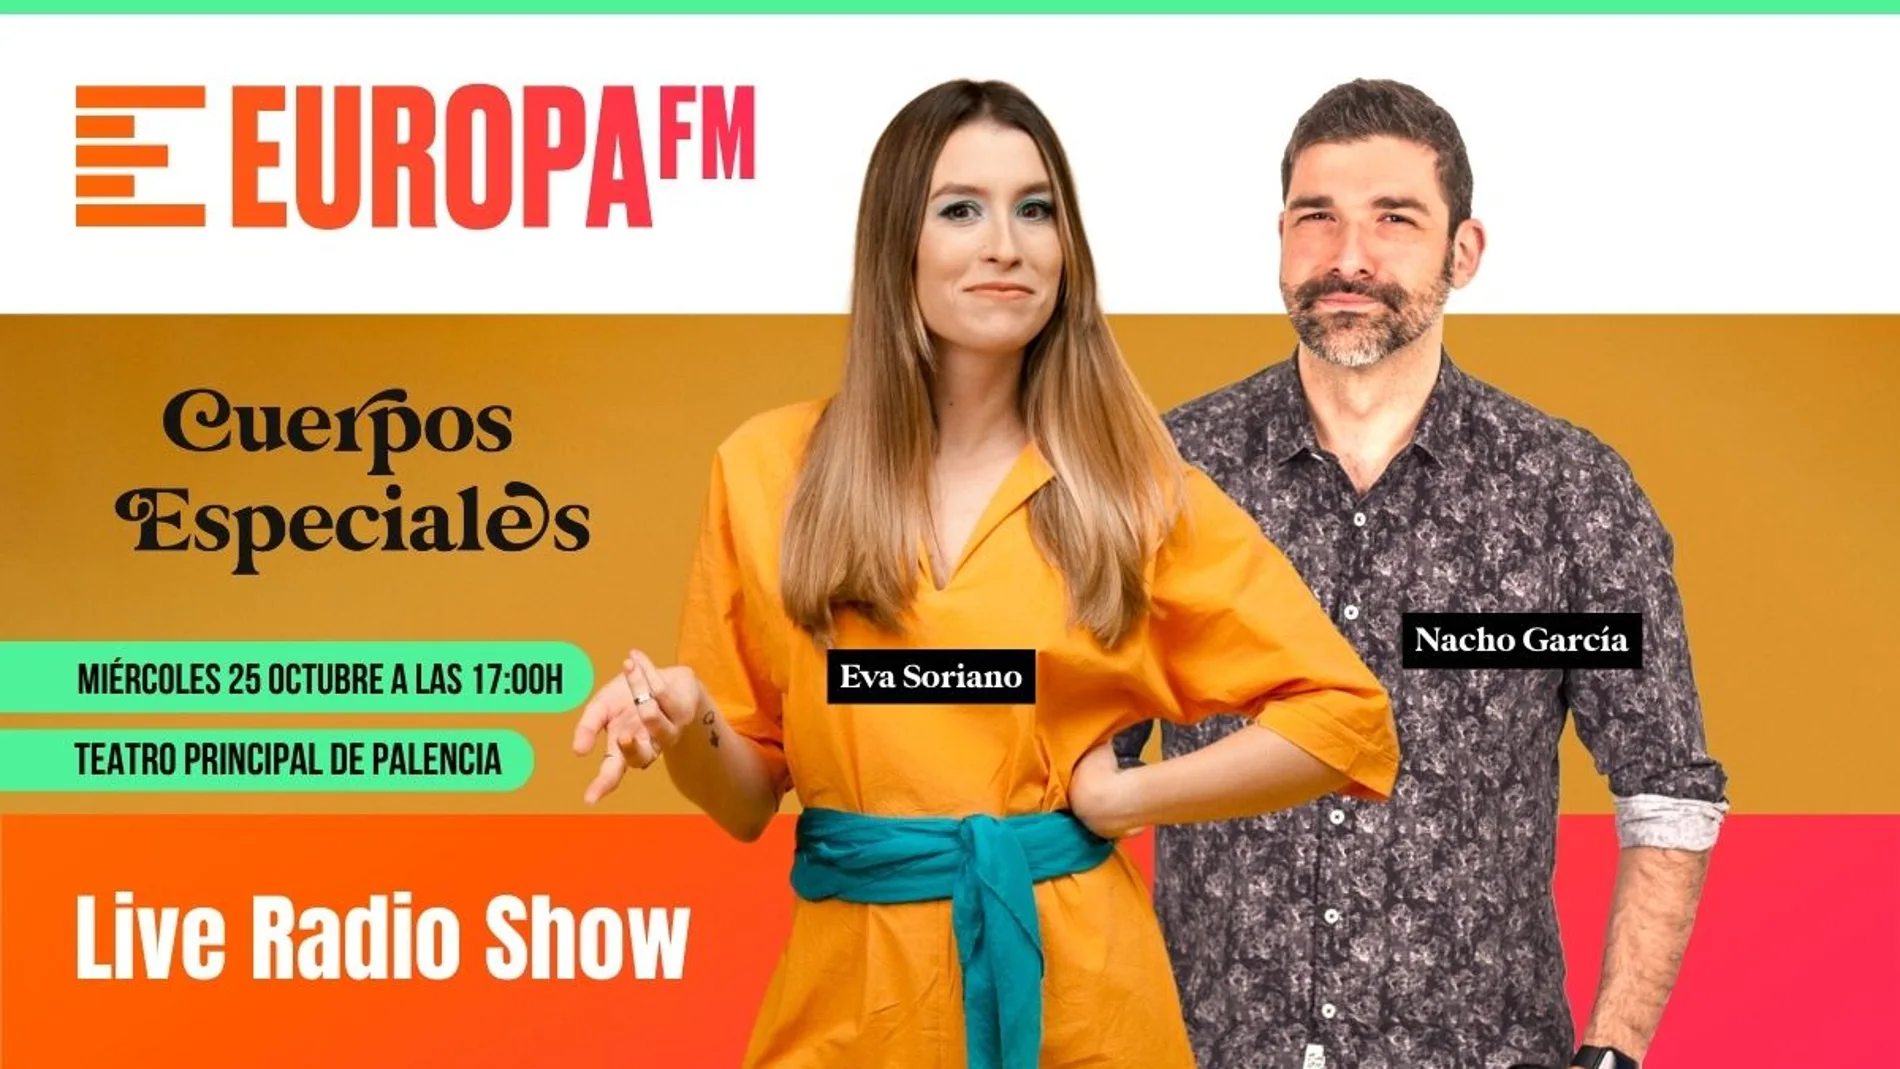 El programa «Cuerpos Especiales» de Europa FM llega a Palencia